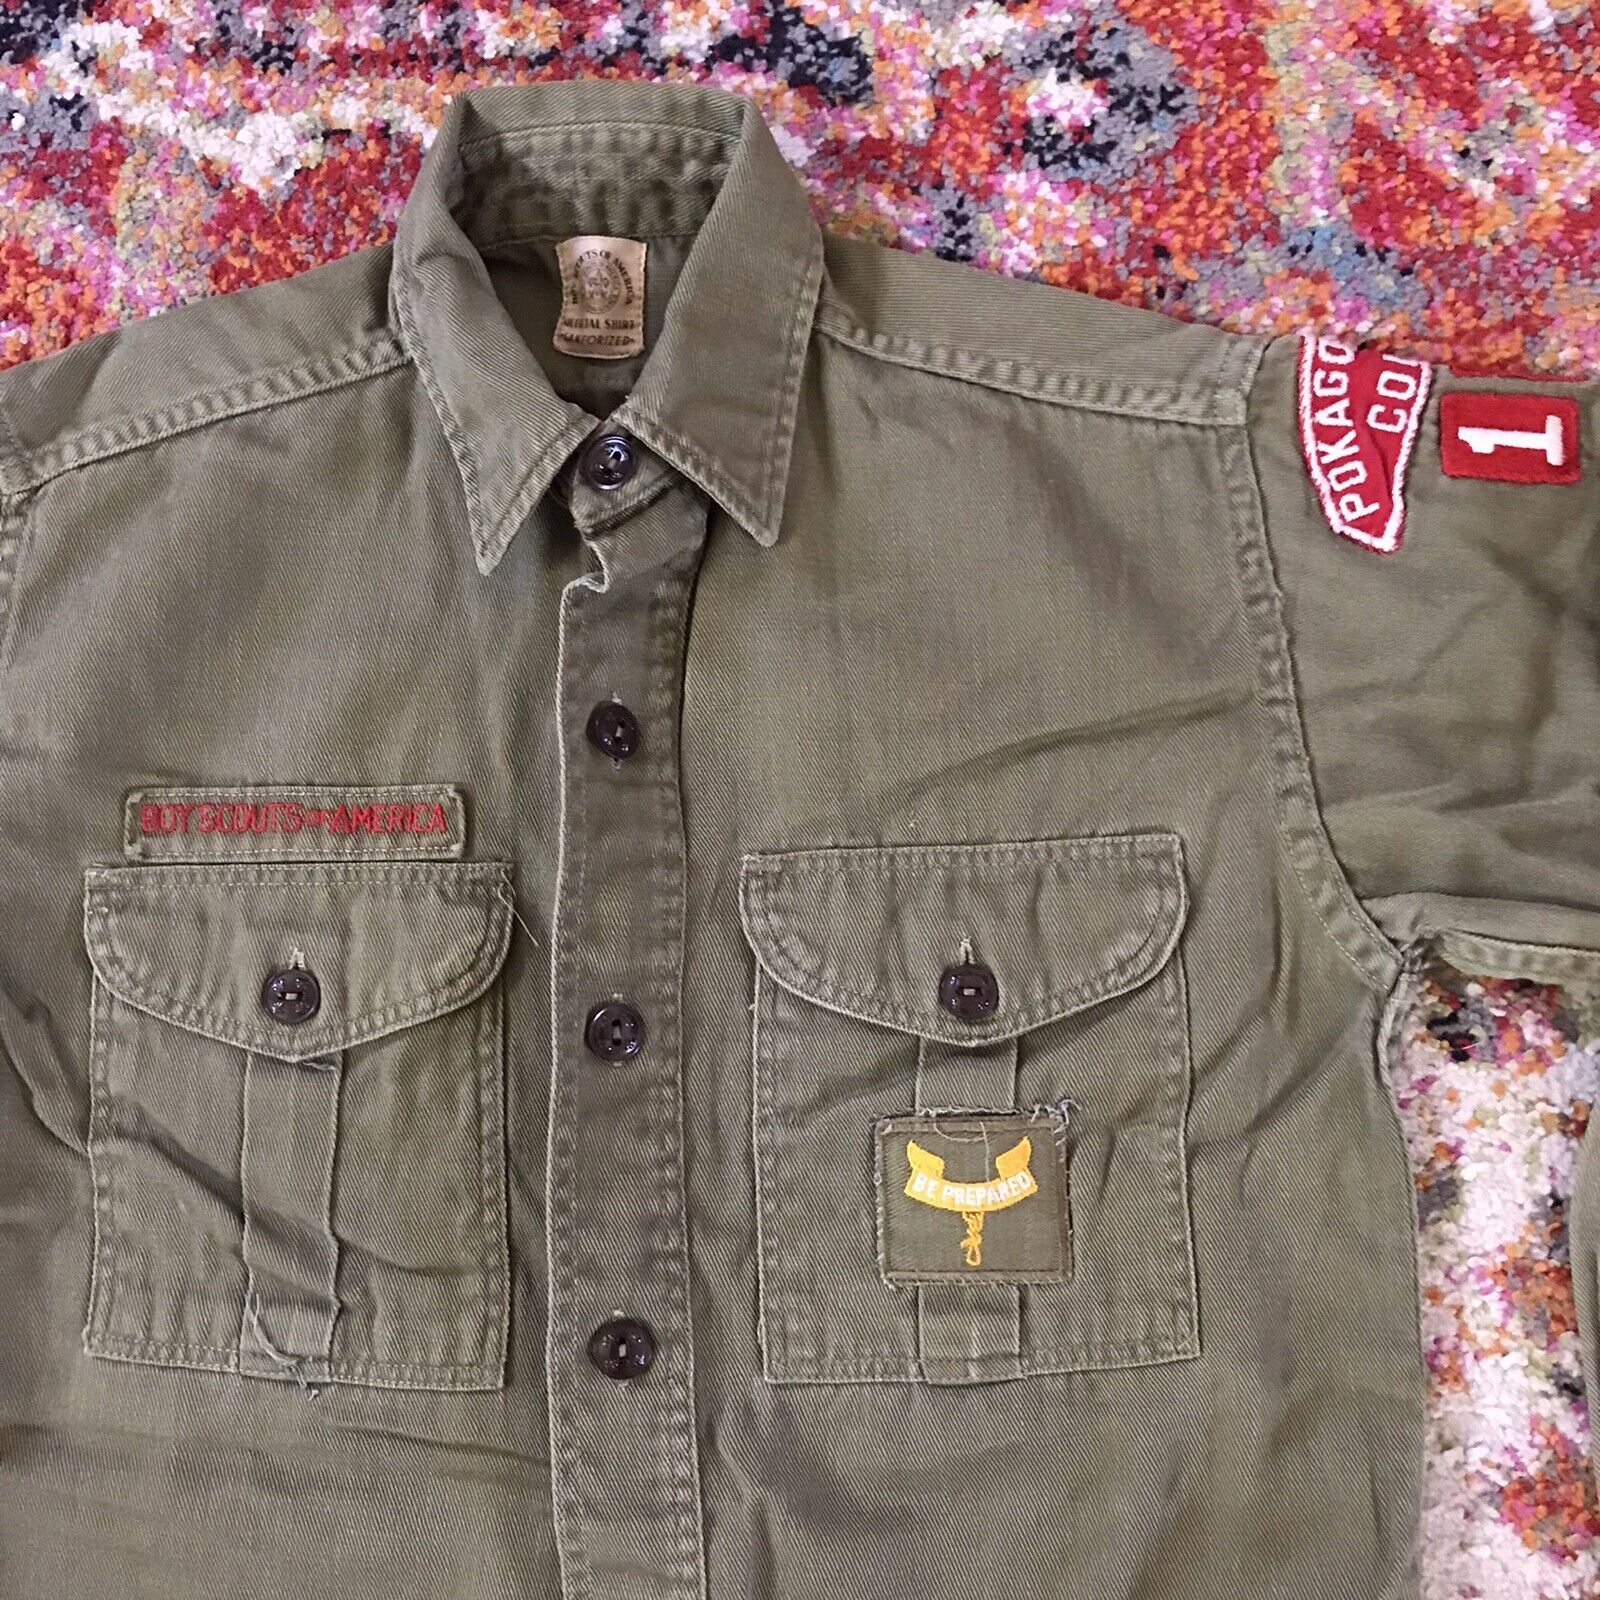 Vintage BSA Sanforized Shirt Pokagon Trails Boy Scouts 